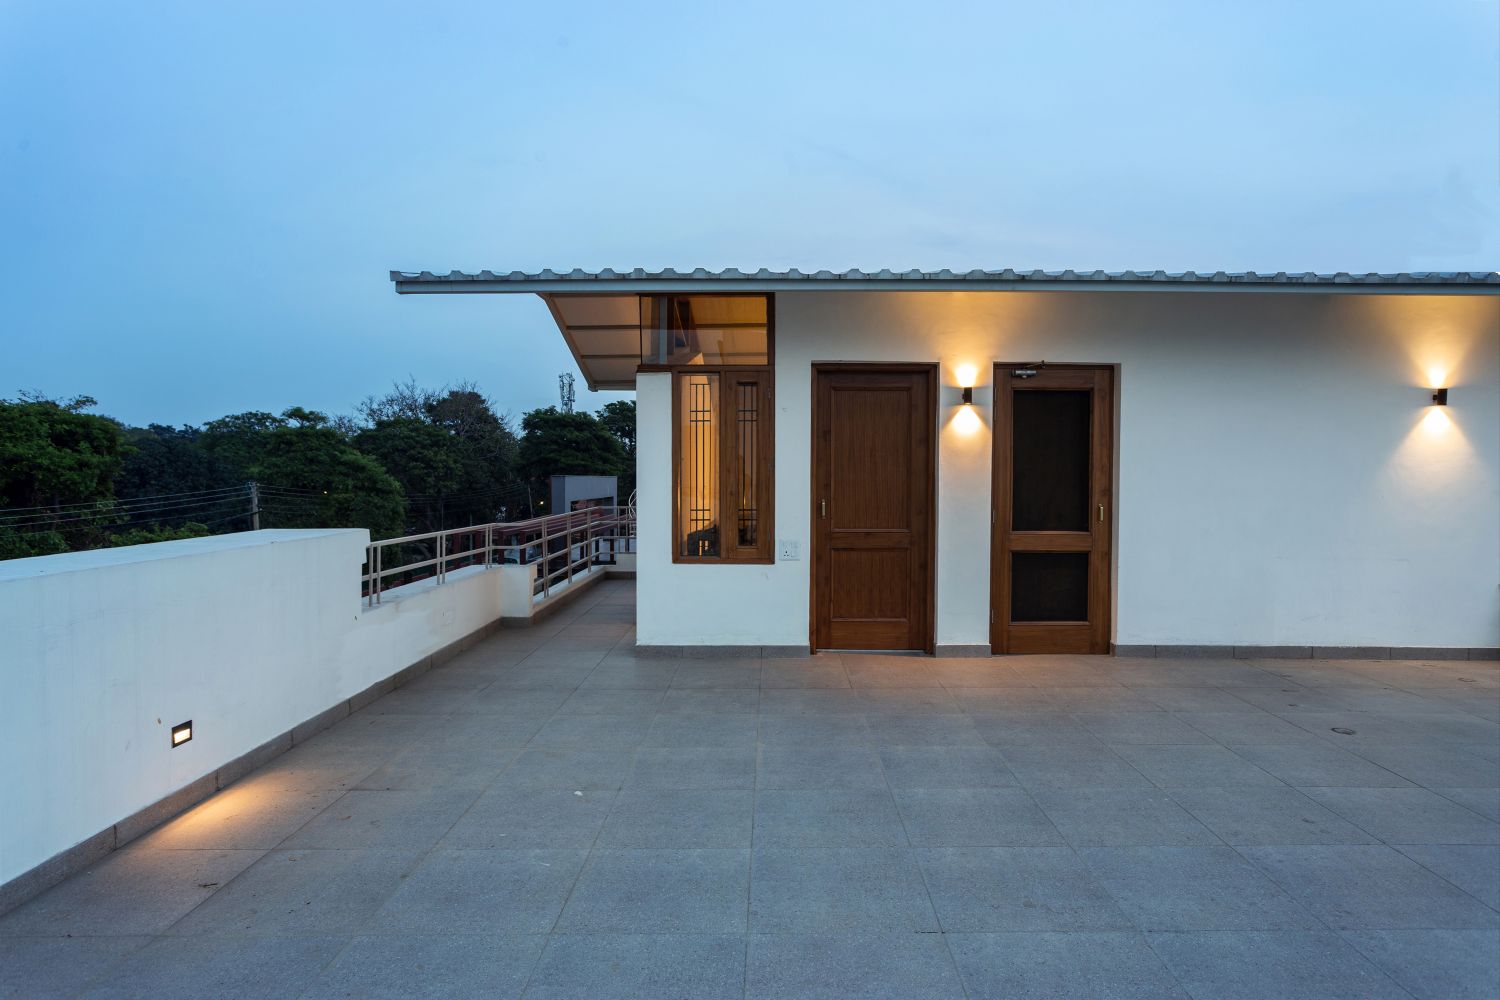 Residence 2105, Chandigarh, by Studio Mohenjodaro 18